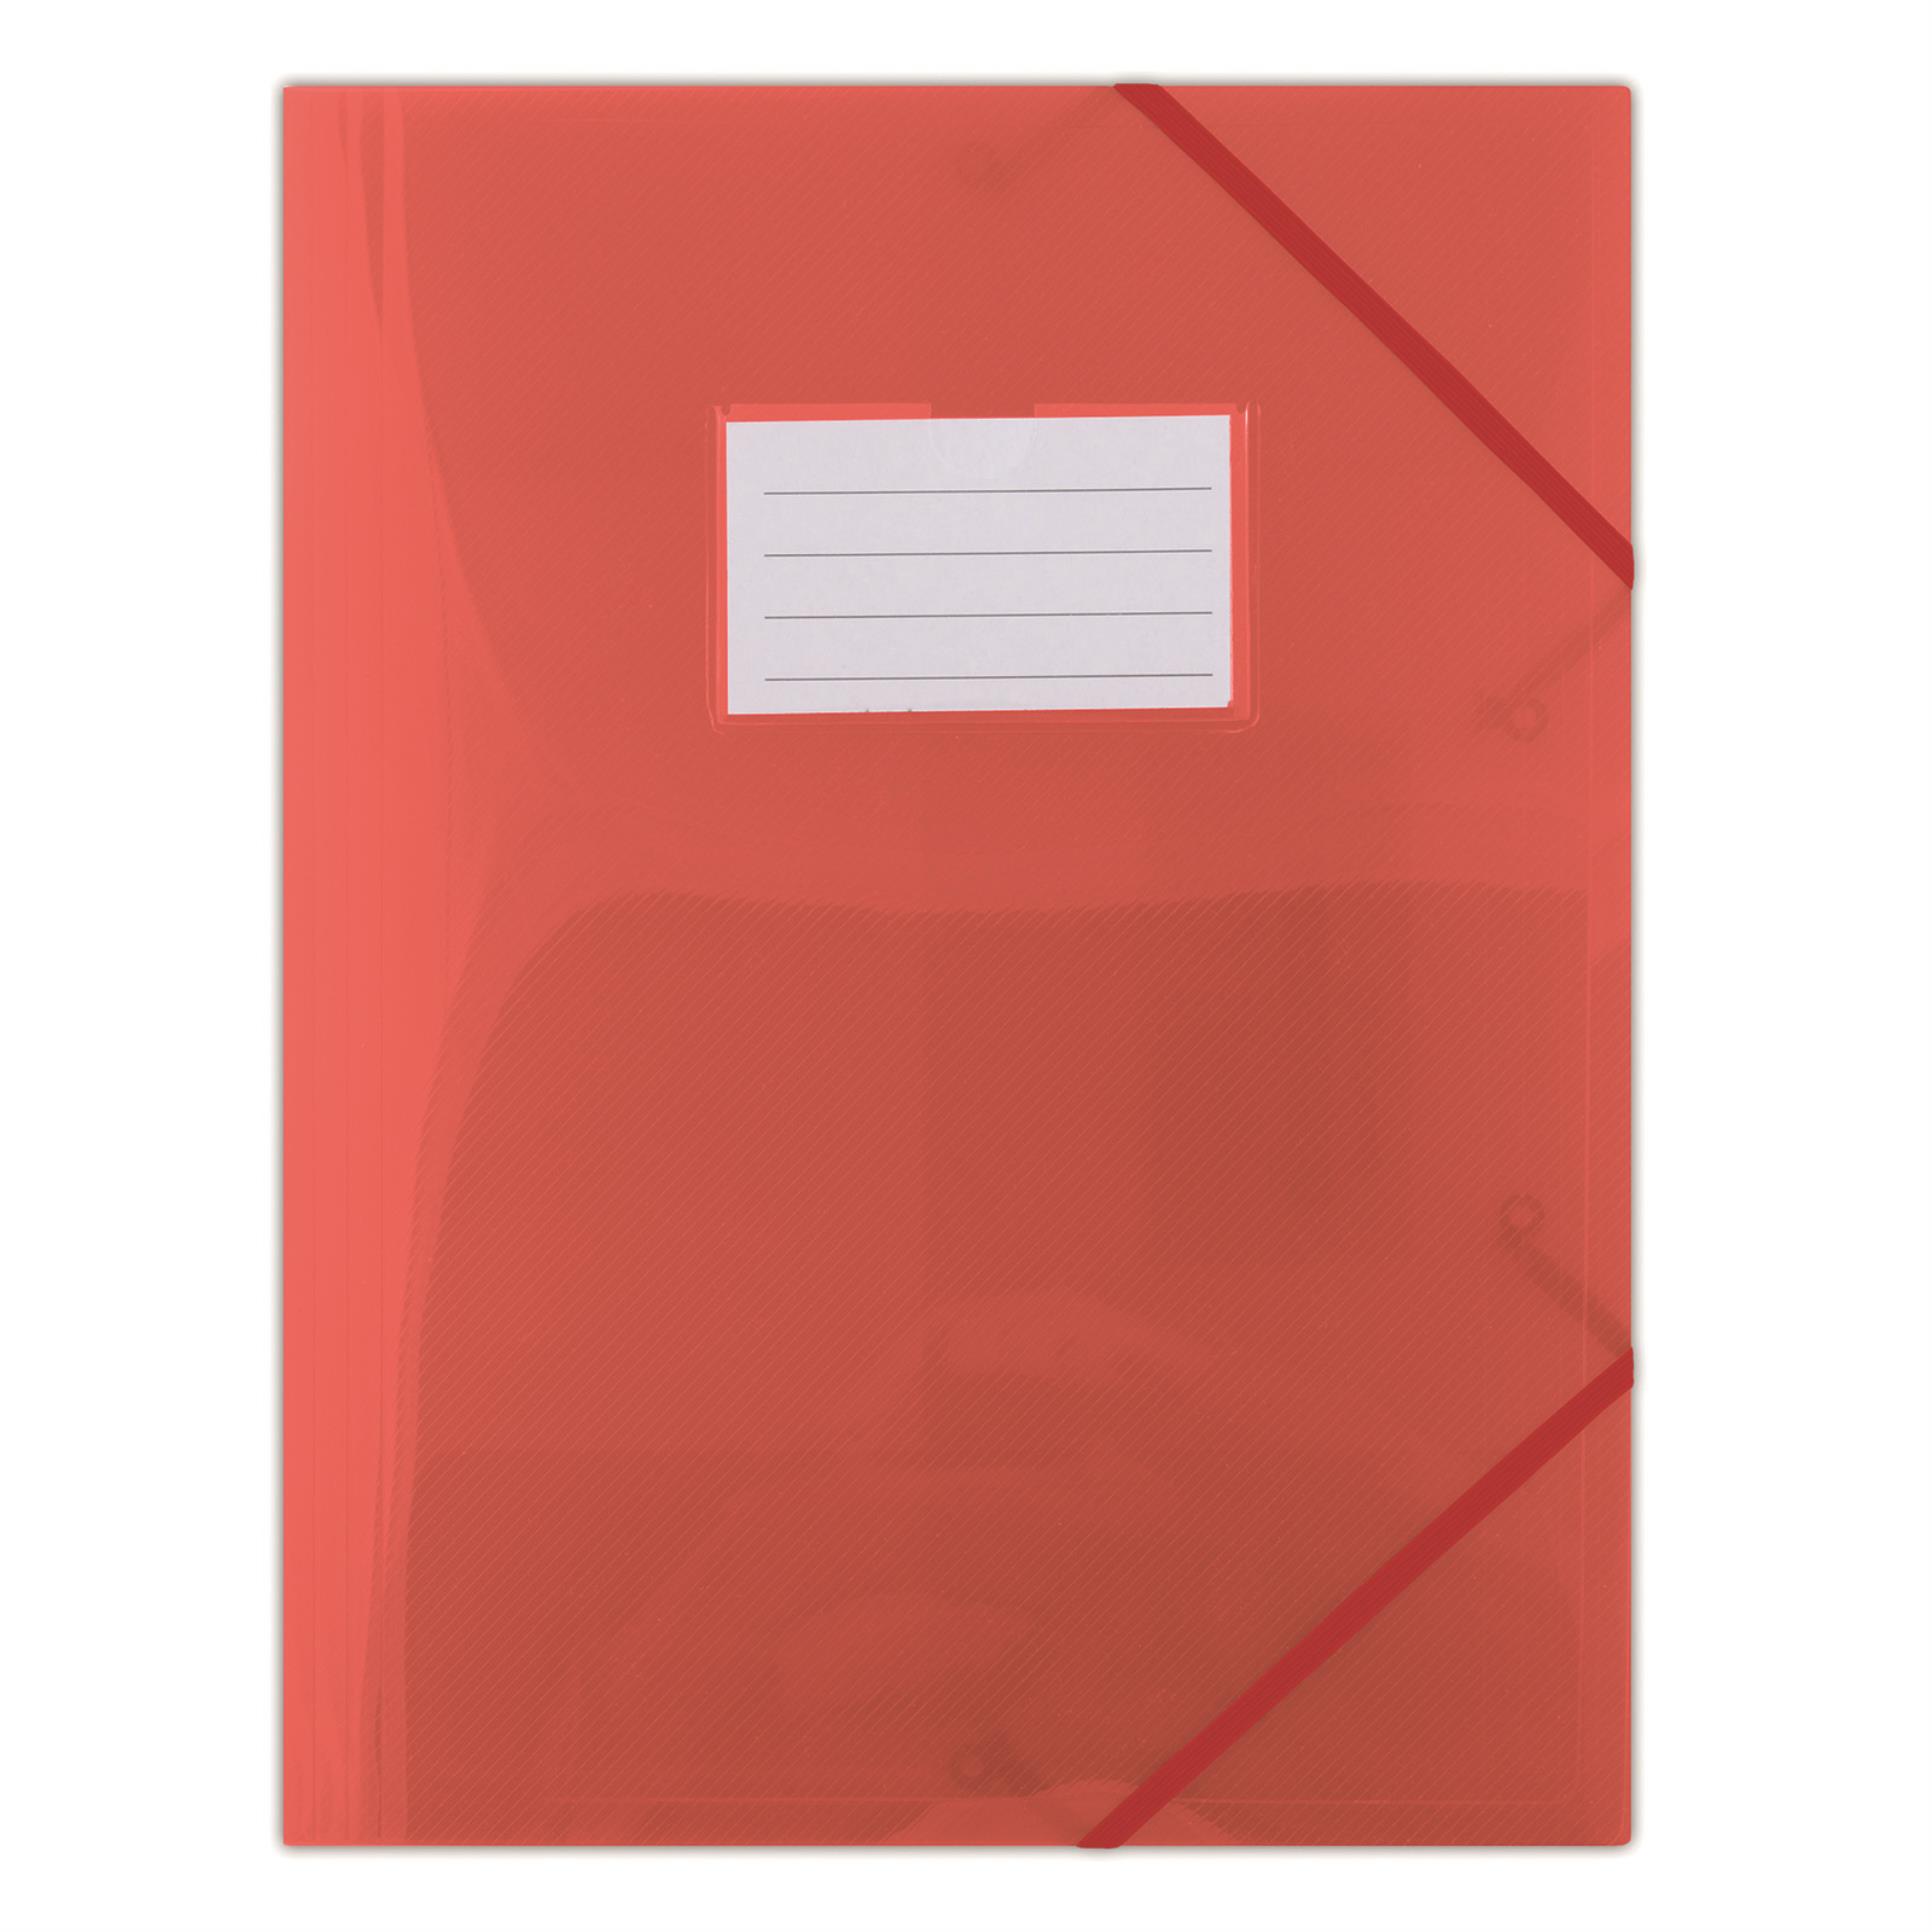 Desky s chlopněmi a gumičkou Donau - A4, plast, červené, 1 ks